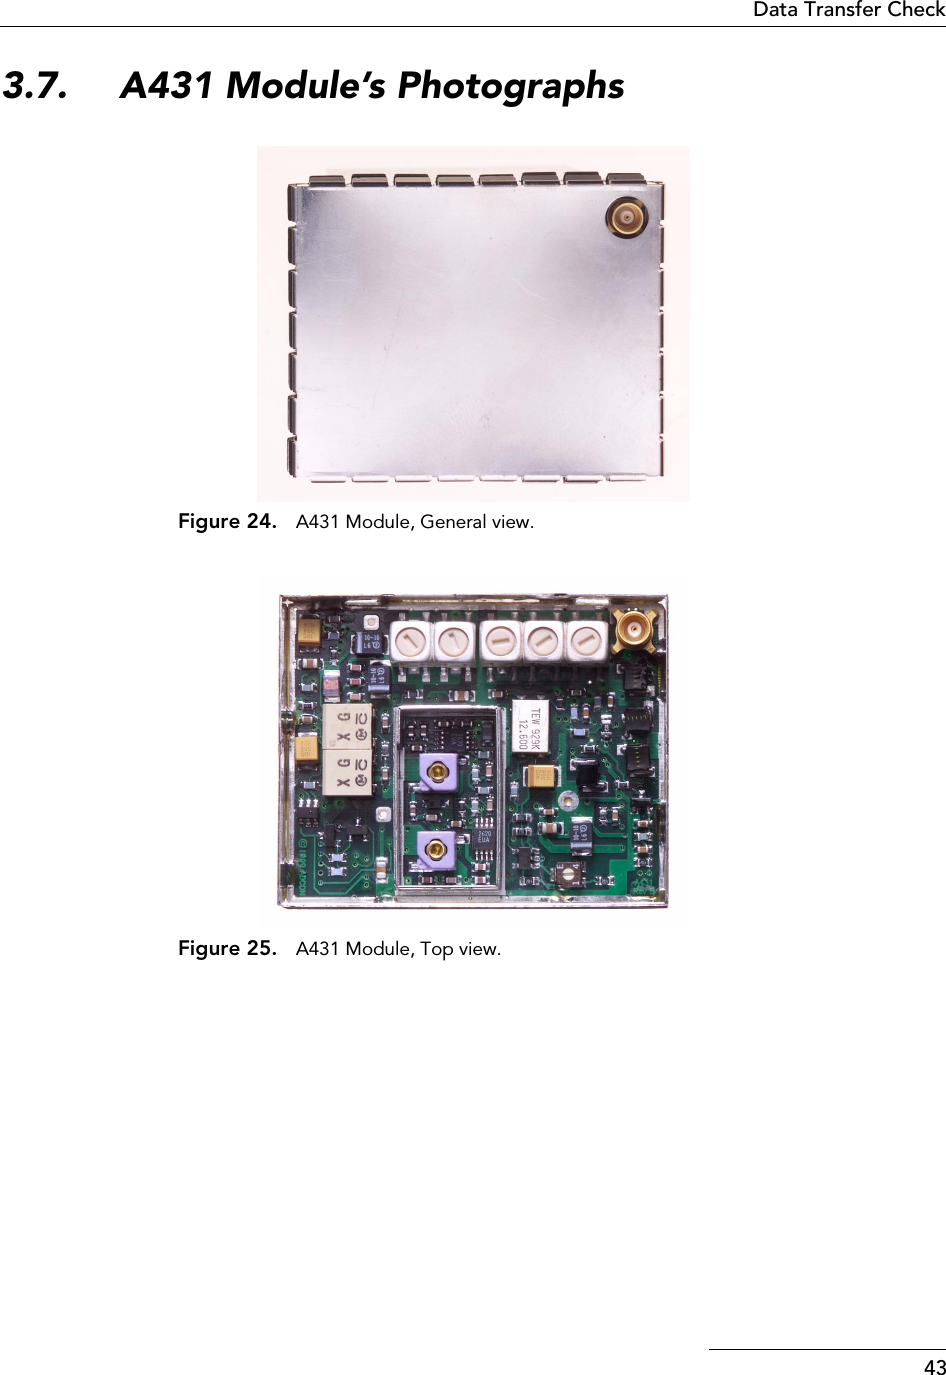 43Data Transfer Check3.7. A431 Module’s PhotographsFigure 24. A431 Module, General view.Figure 25. A431 Module, Top view.